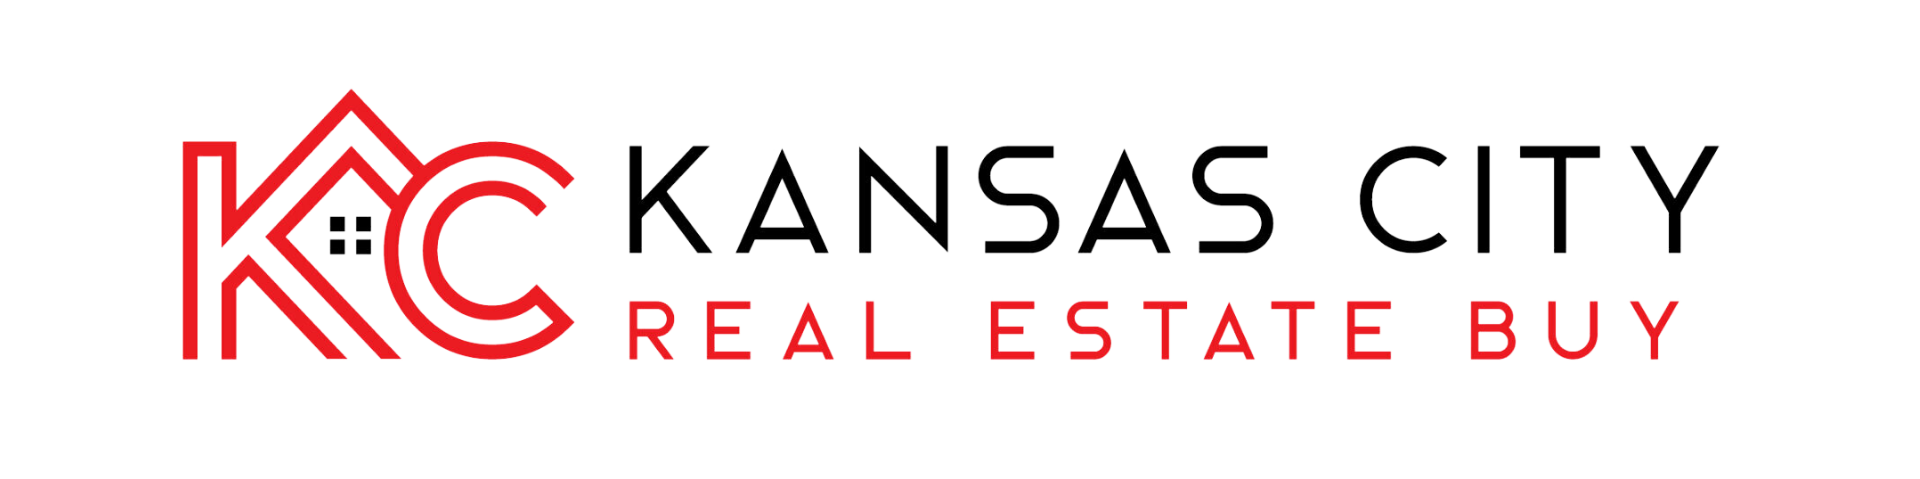 Kansas City Real Estate Buy LLC logo